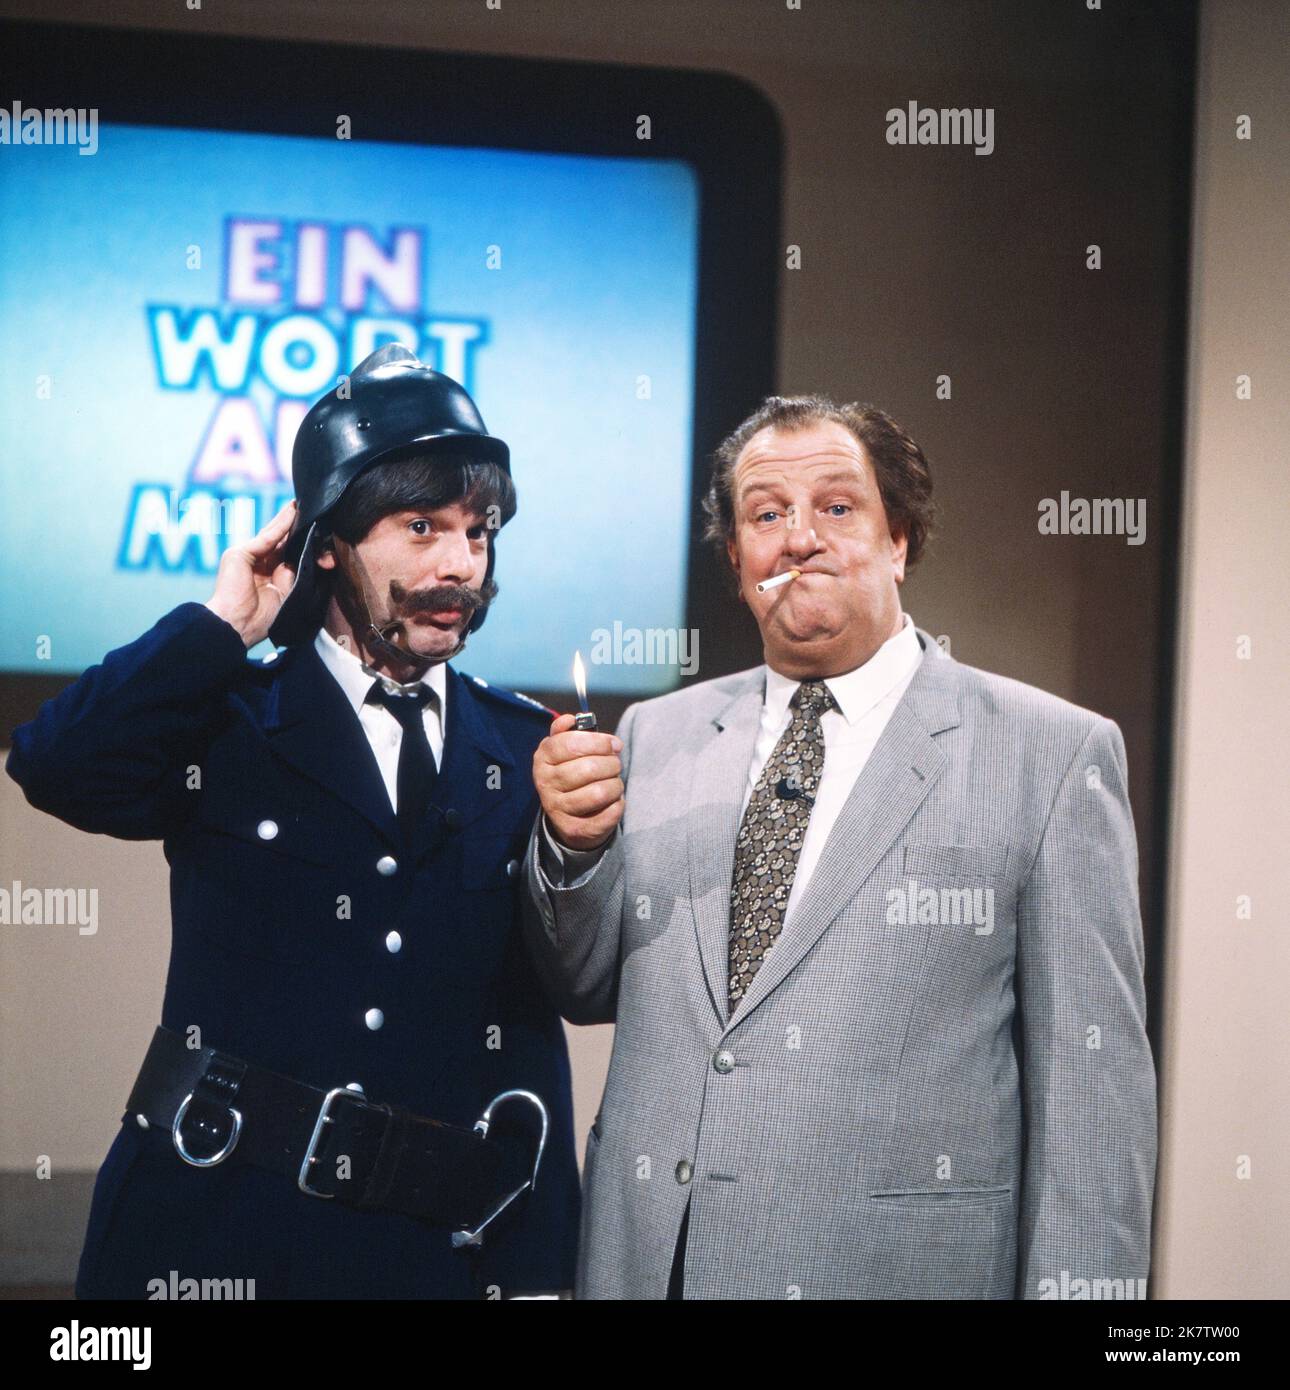 Ein Wort aus Musik, Spielshow, Deutschland 1981 - 1983, Sketchpartner Horst Jüssen als Feuerwehrmann mit rauchendem Moderator Heinz Eckner Stock Photo